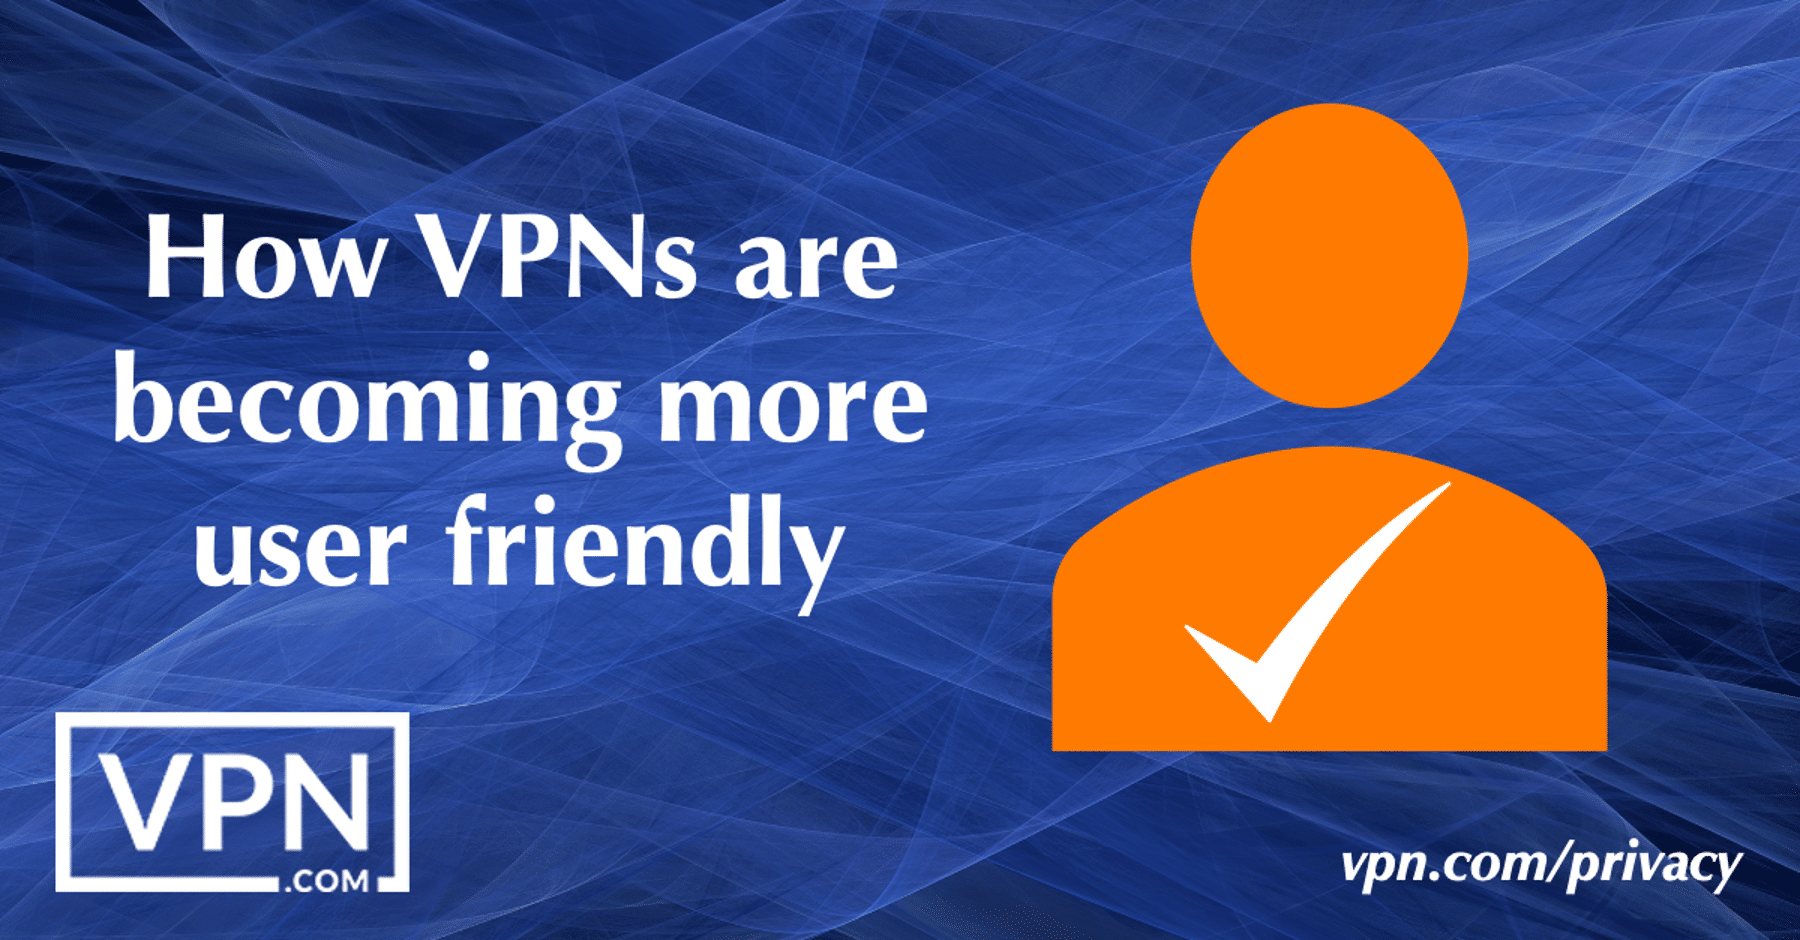 Hoe VPN's gebruiksvriendelijker worden.